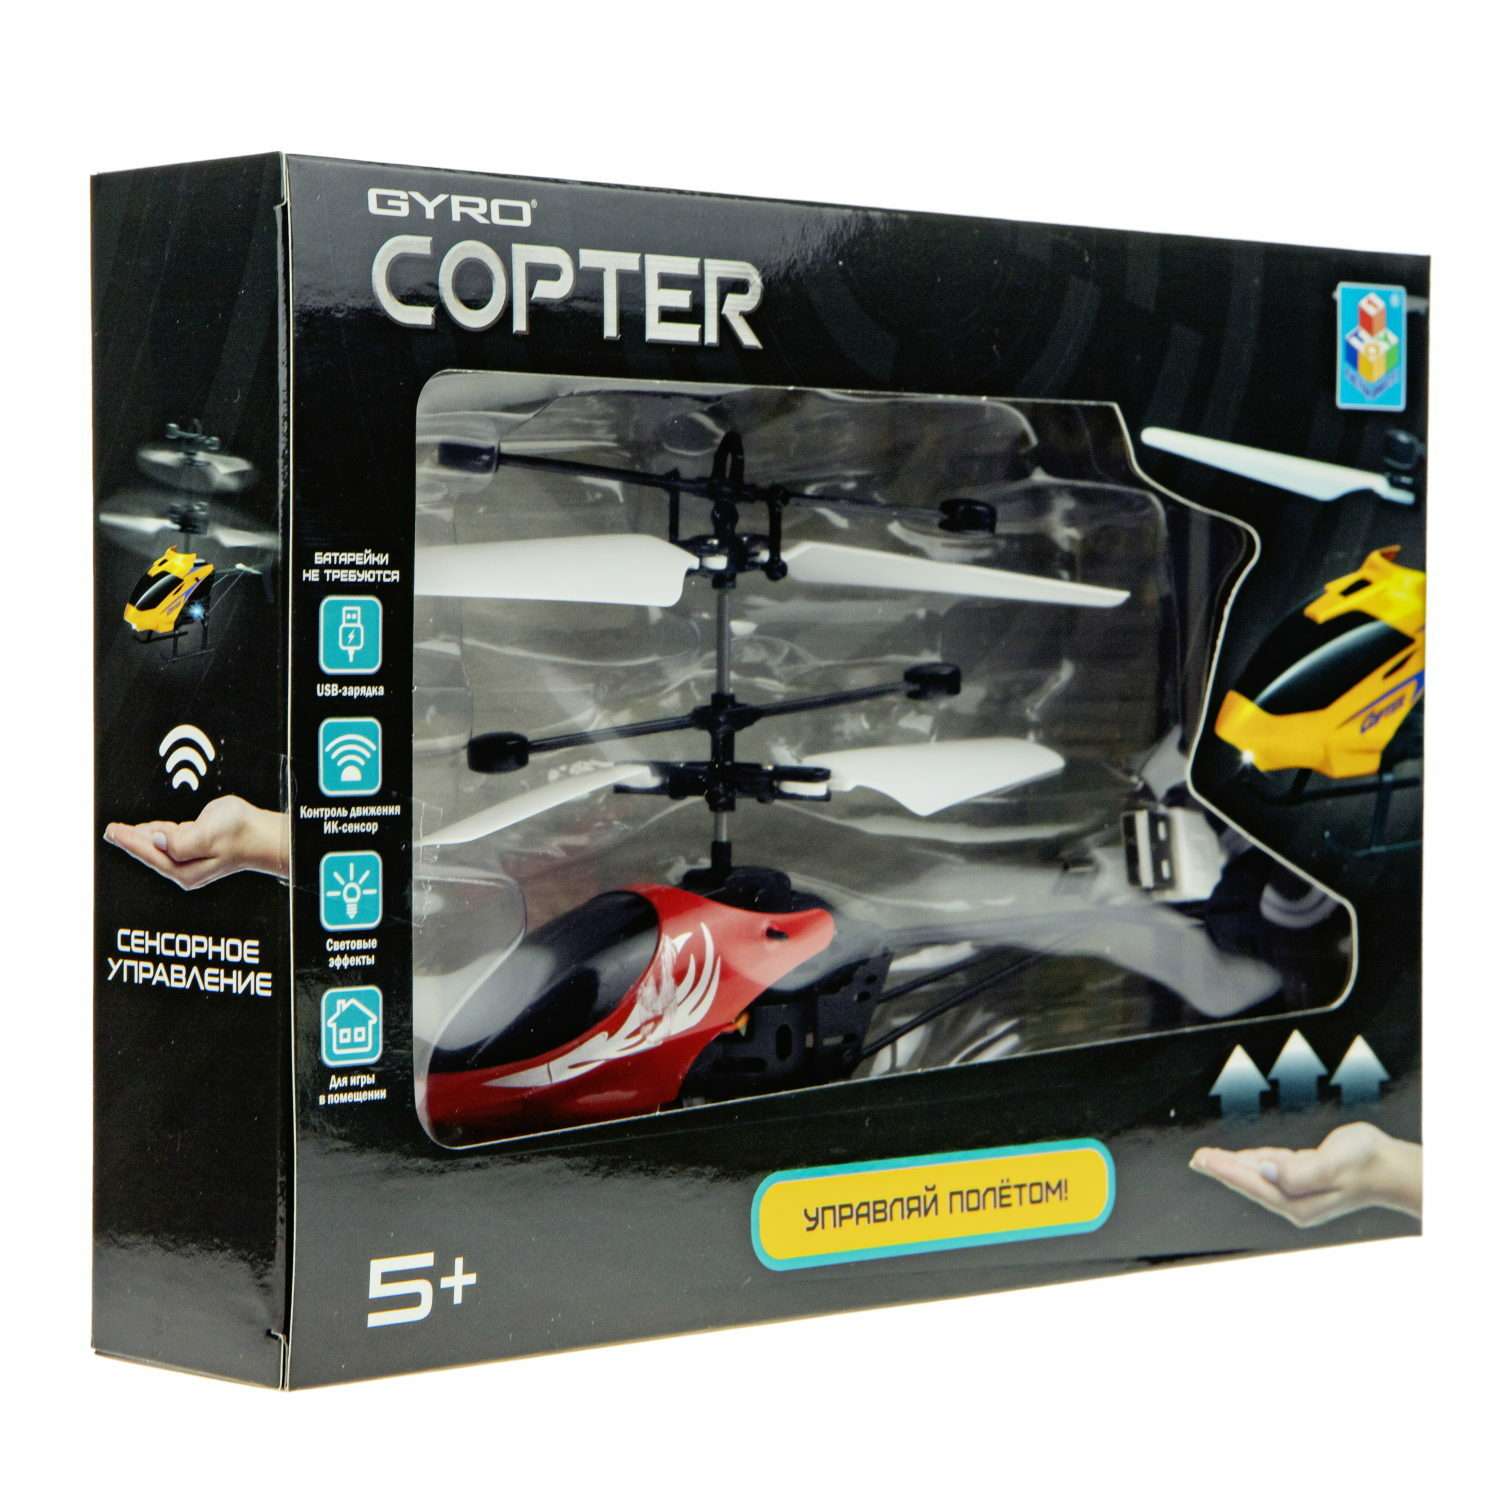 Интерактивная игрушка 1TOY Gyro-Copter вертолёт на сенсорном управлении со световыми эффектами Т15183 - фото 5